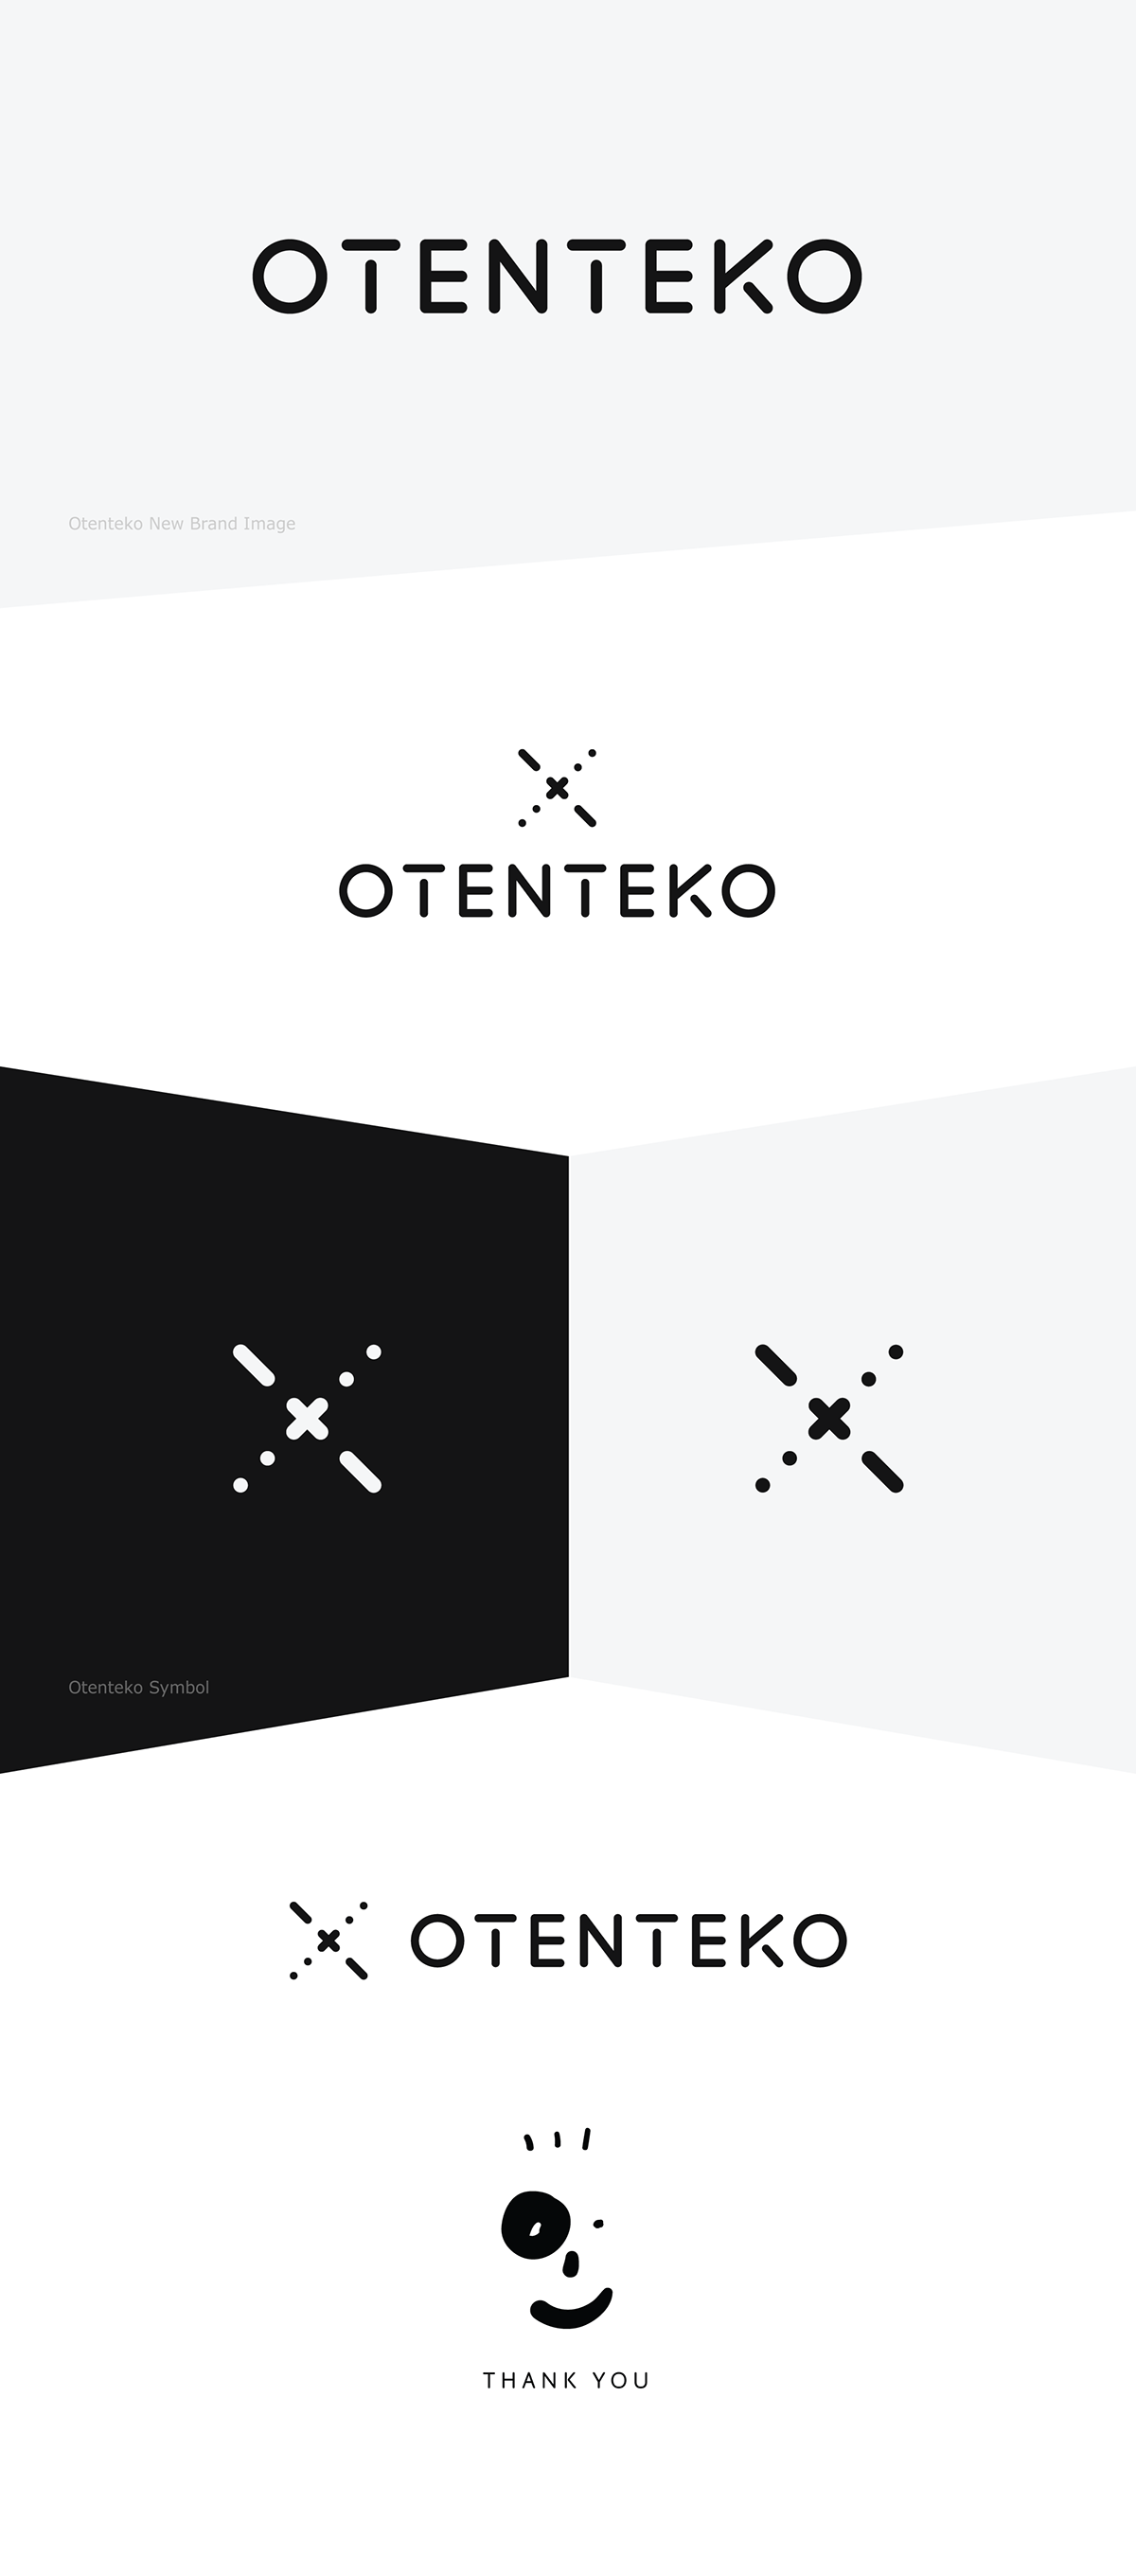 Otenteko brand new logo Logotype symbol logos naming Adobe Portfolio